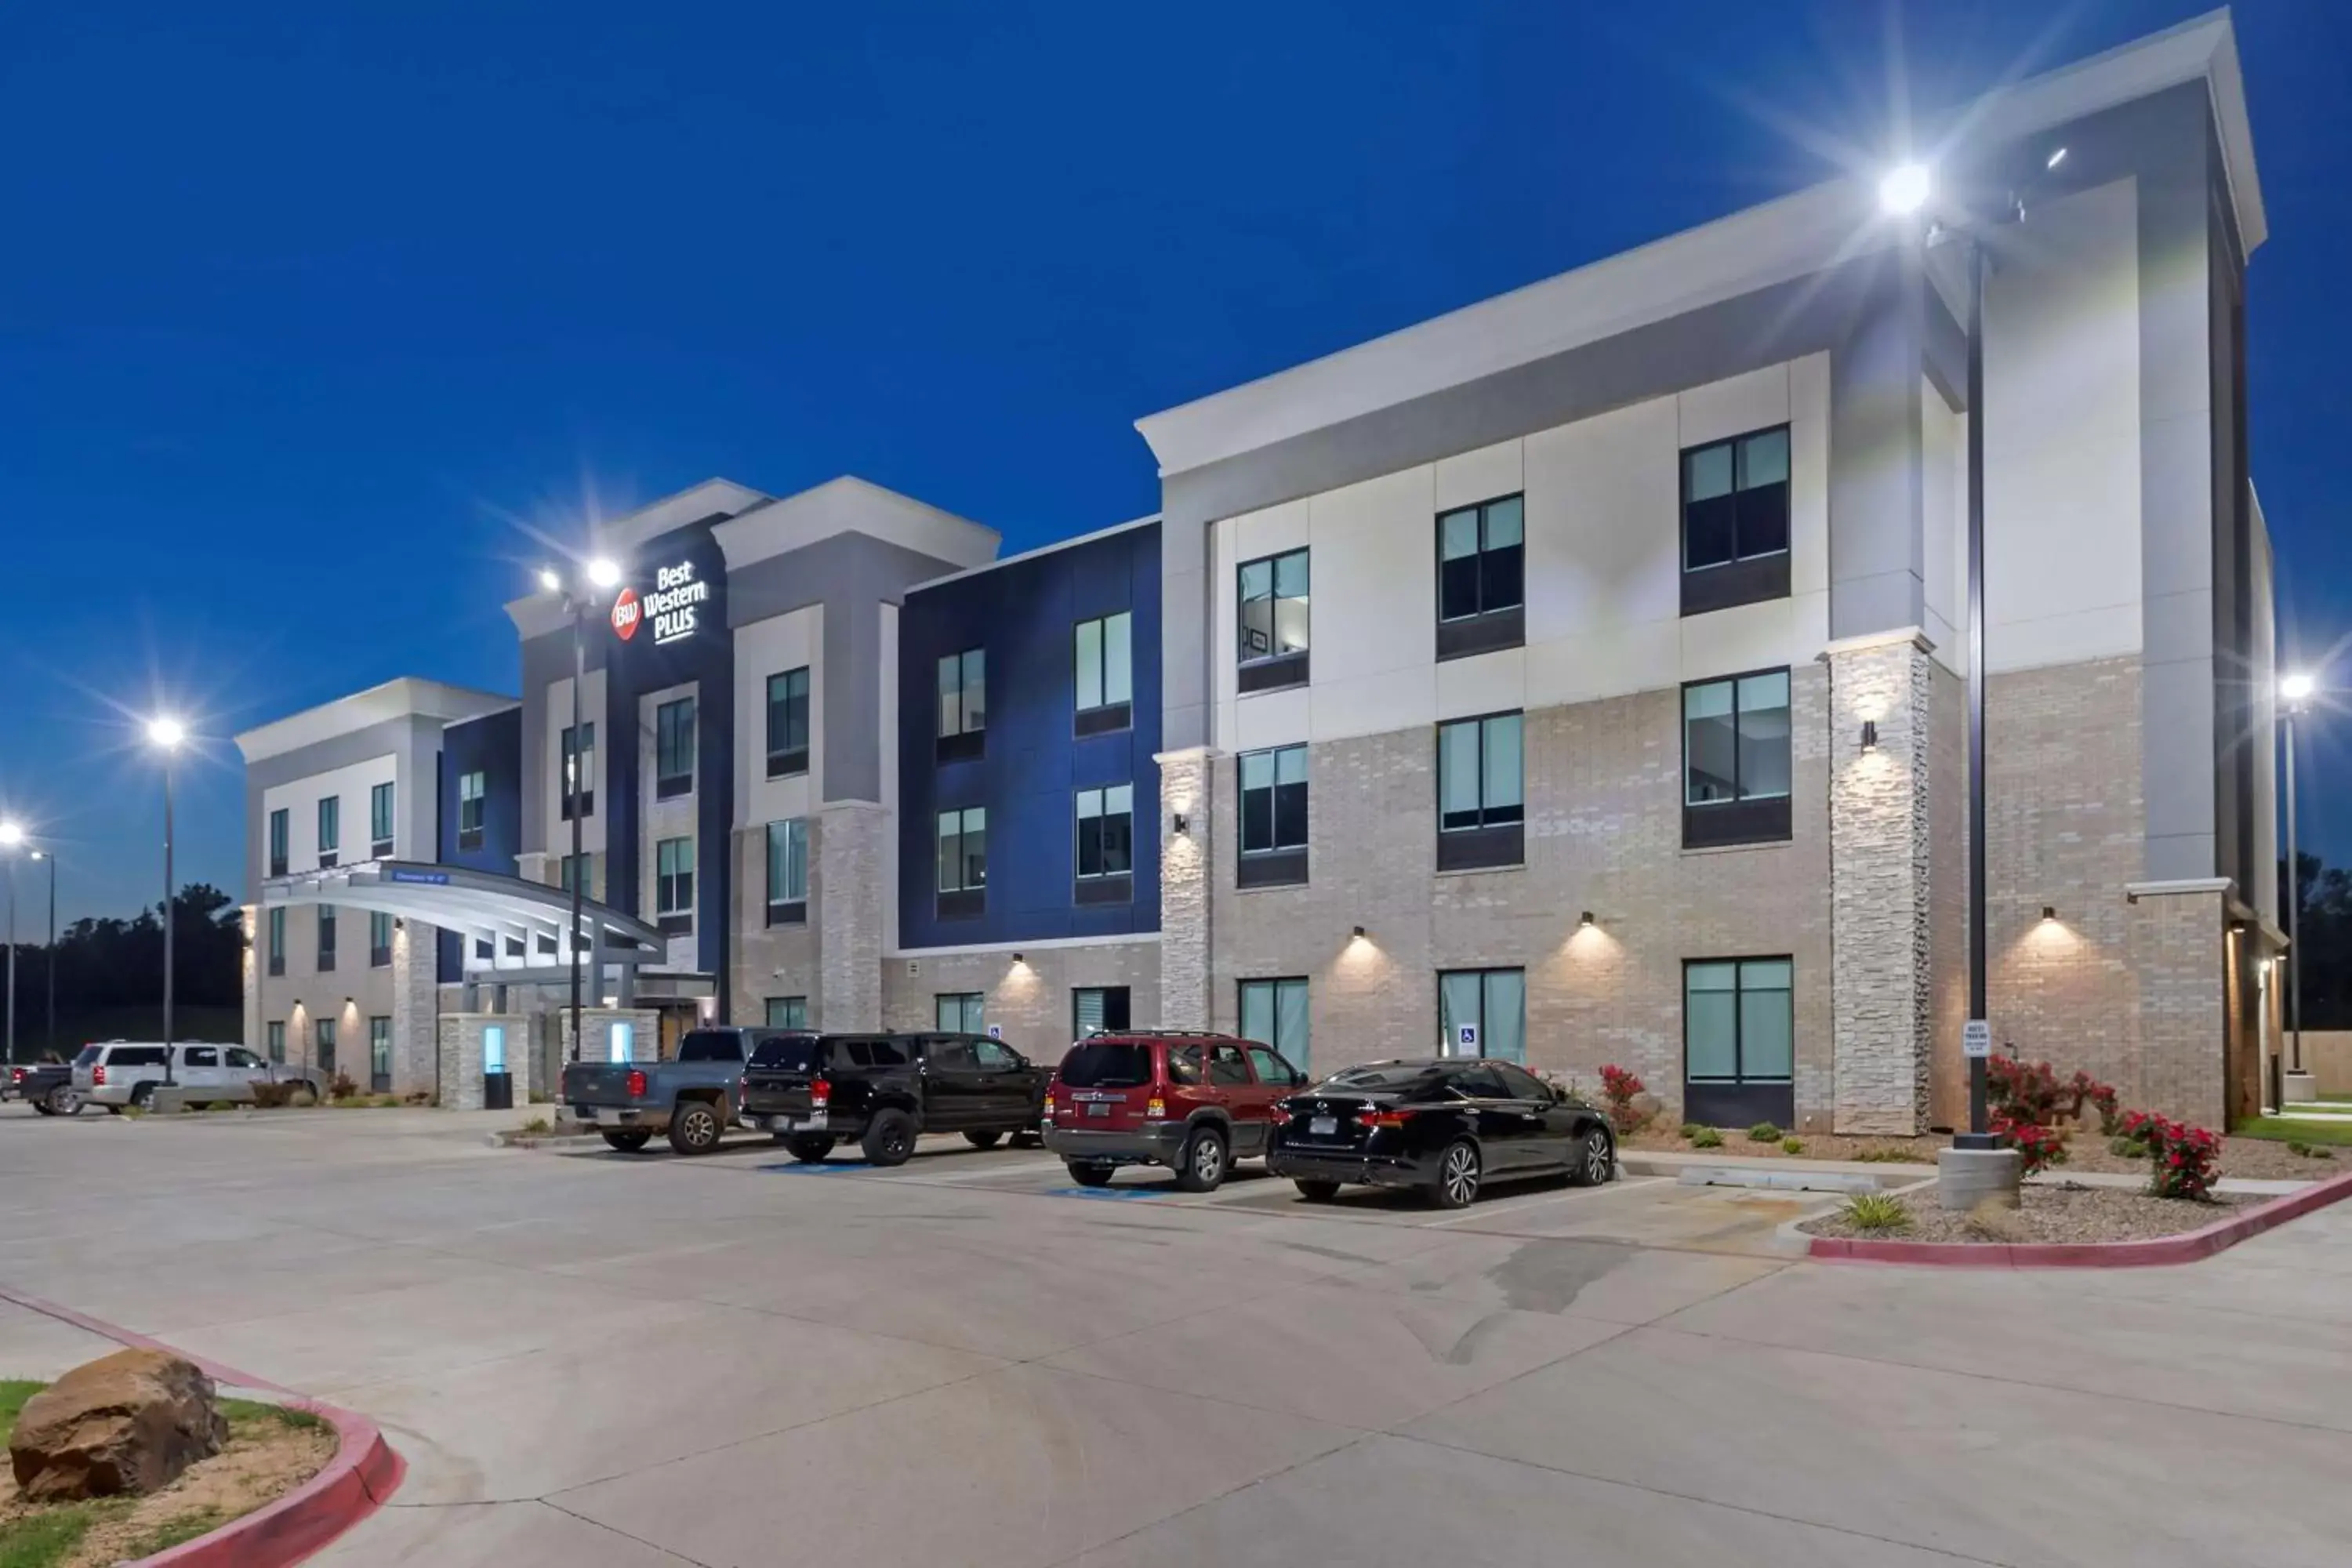 Property Building in Best Western Plus Choctaw Inn & Suites